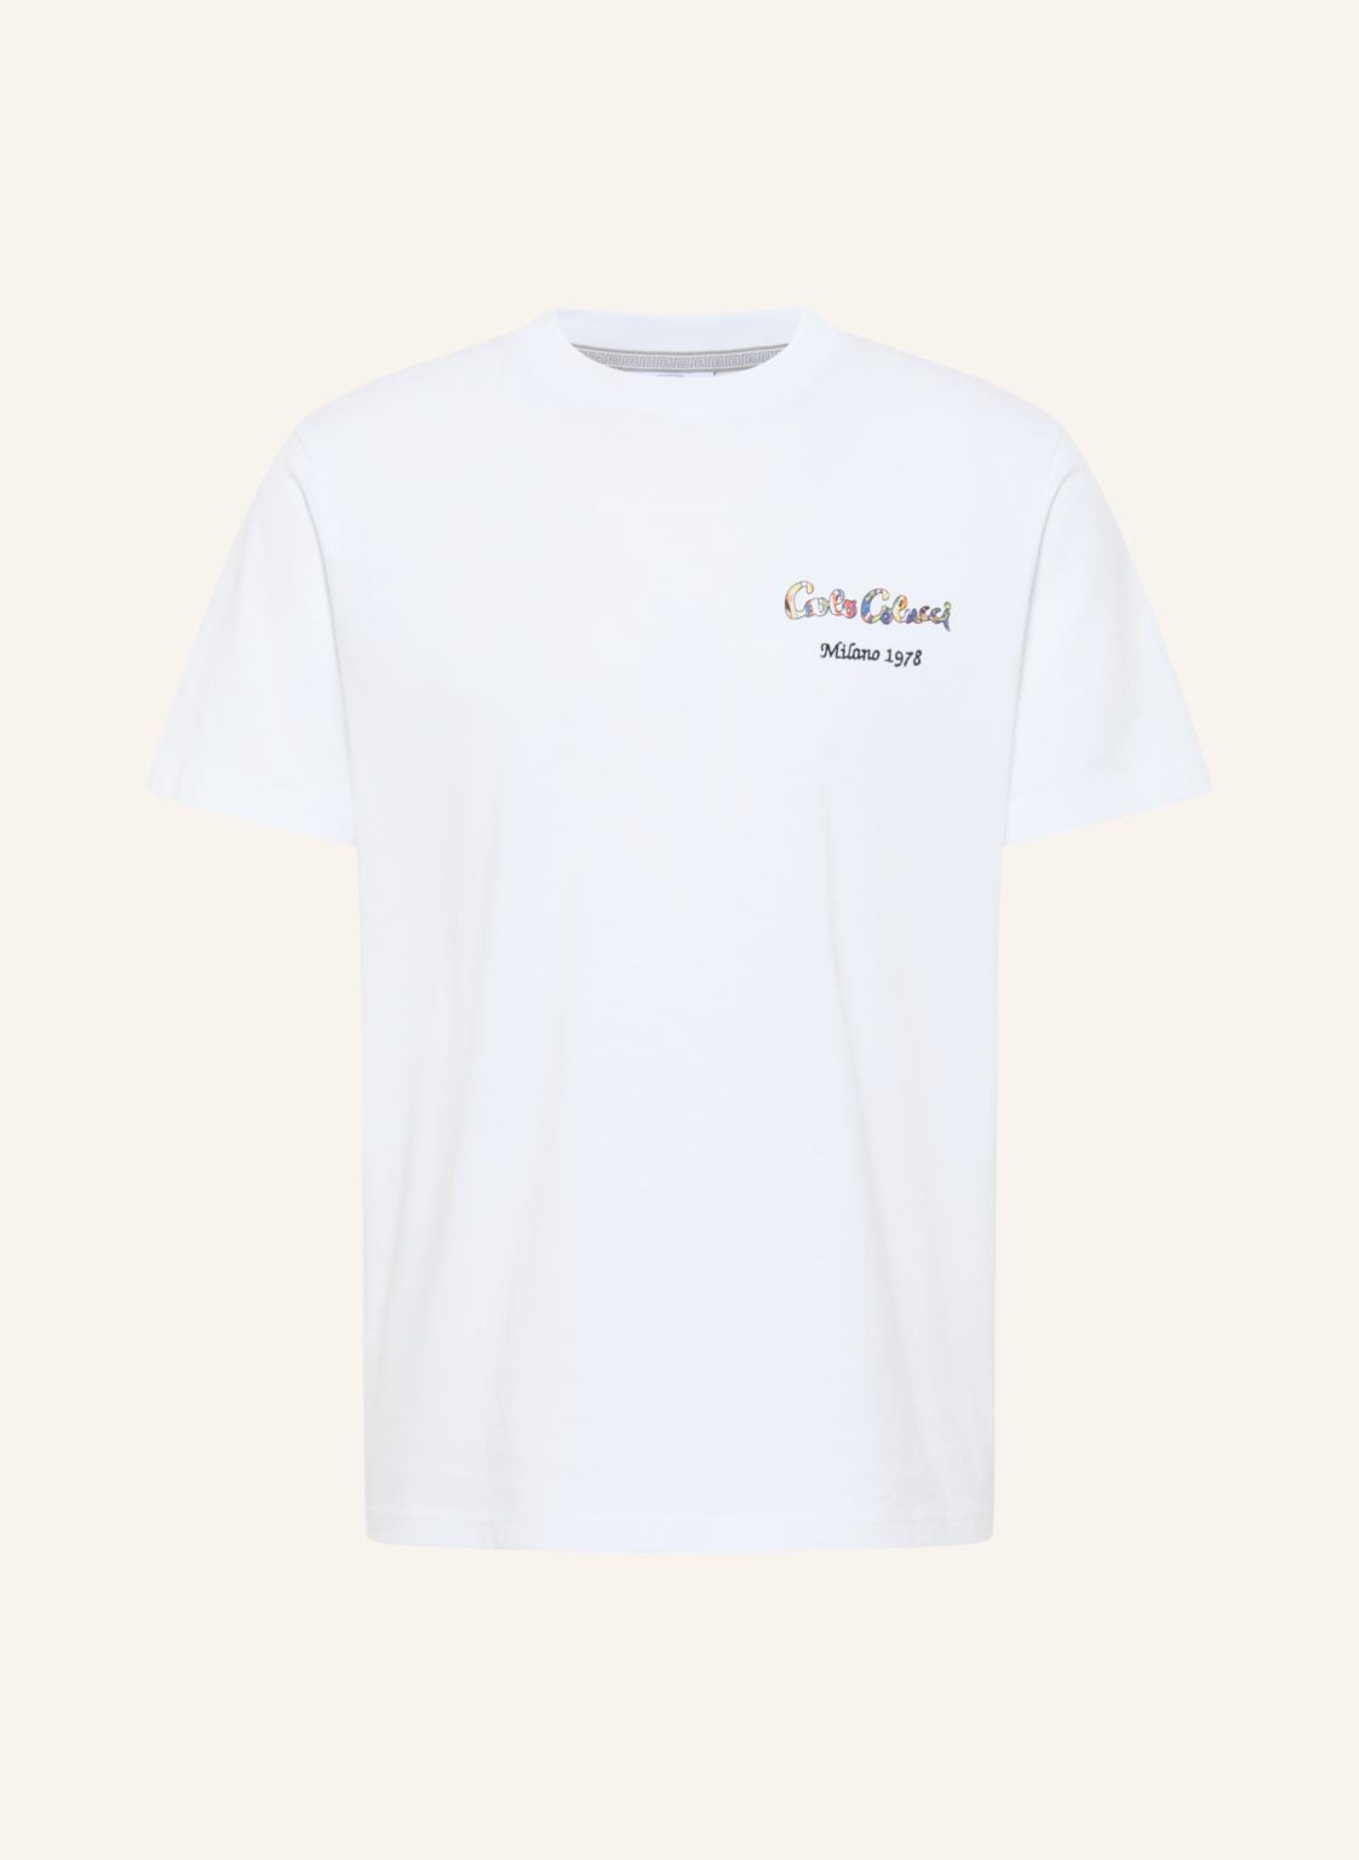 CARLO COLUCCI T-Shirt "Buon Appetito" DI COSIMO, Farbe: WEISS (Bild 1)